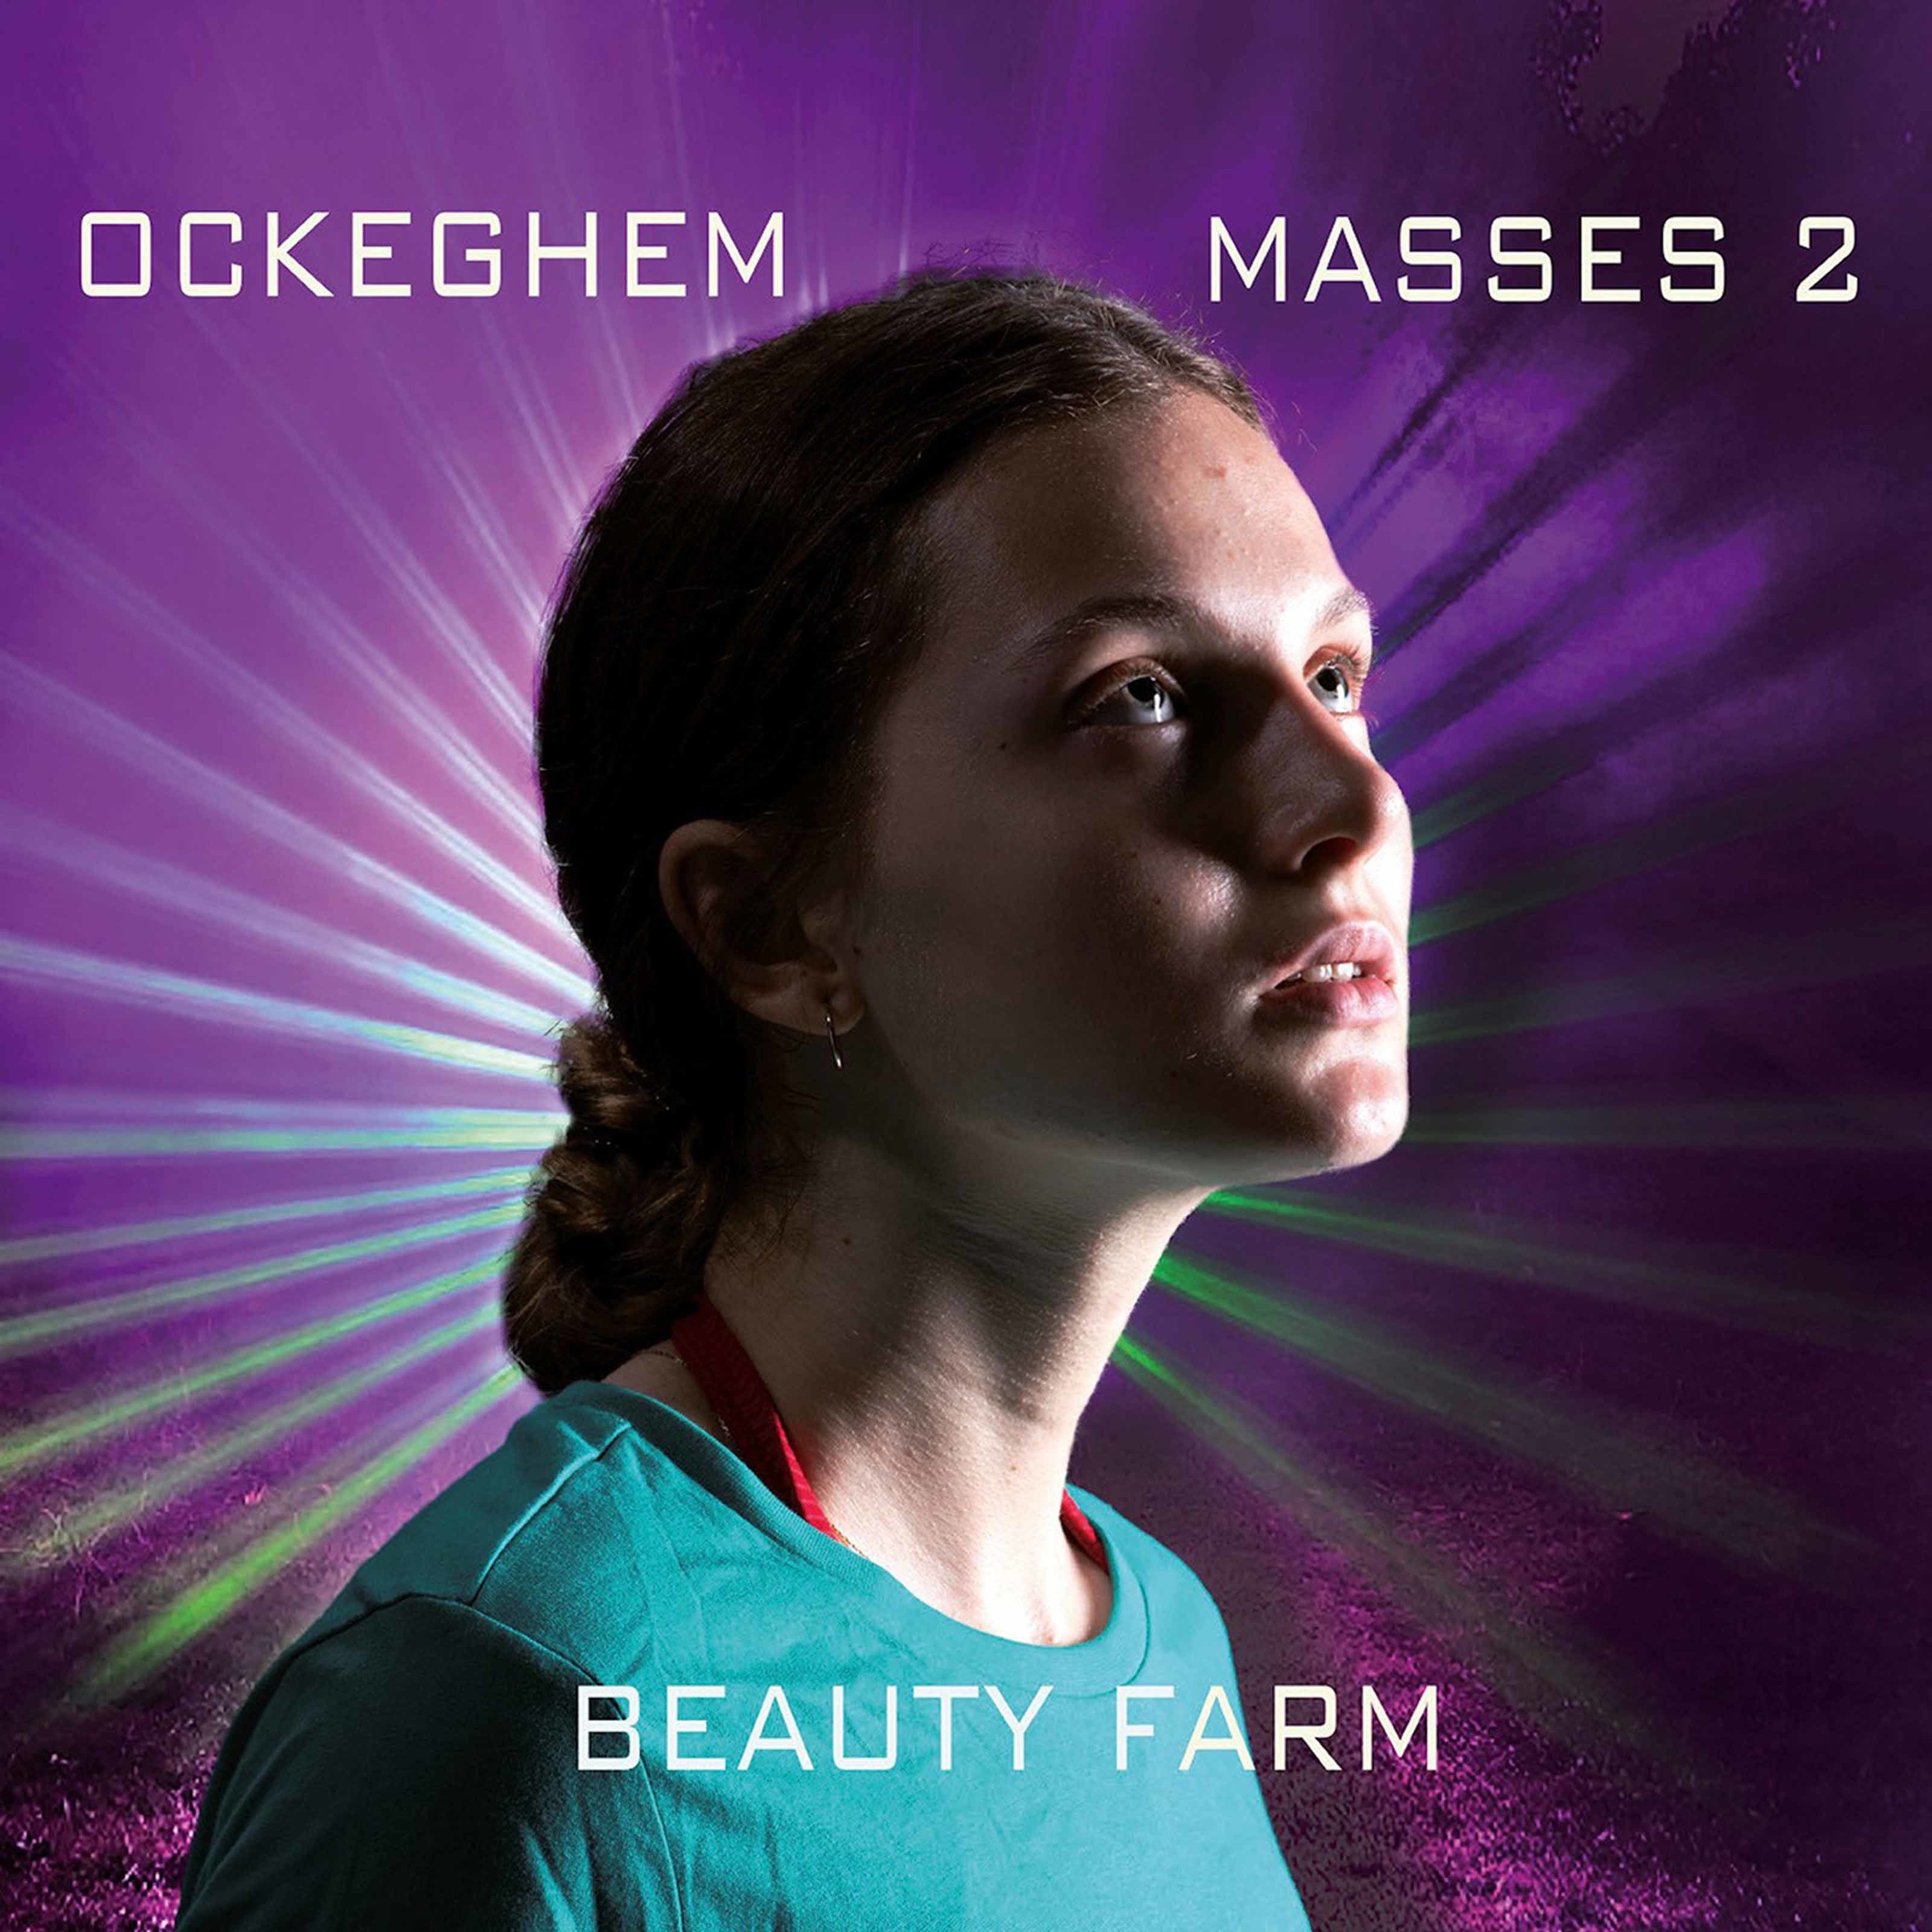 Beauty Farm – Ockeghem: Masses, Vol. 2 (2020) [FLAC 24bit/96kHz]